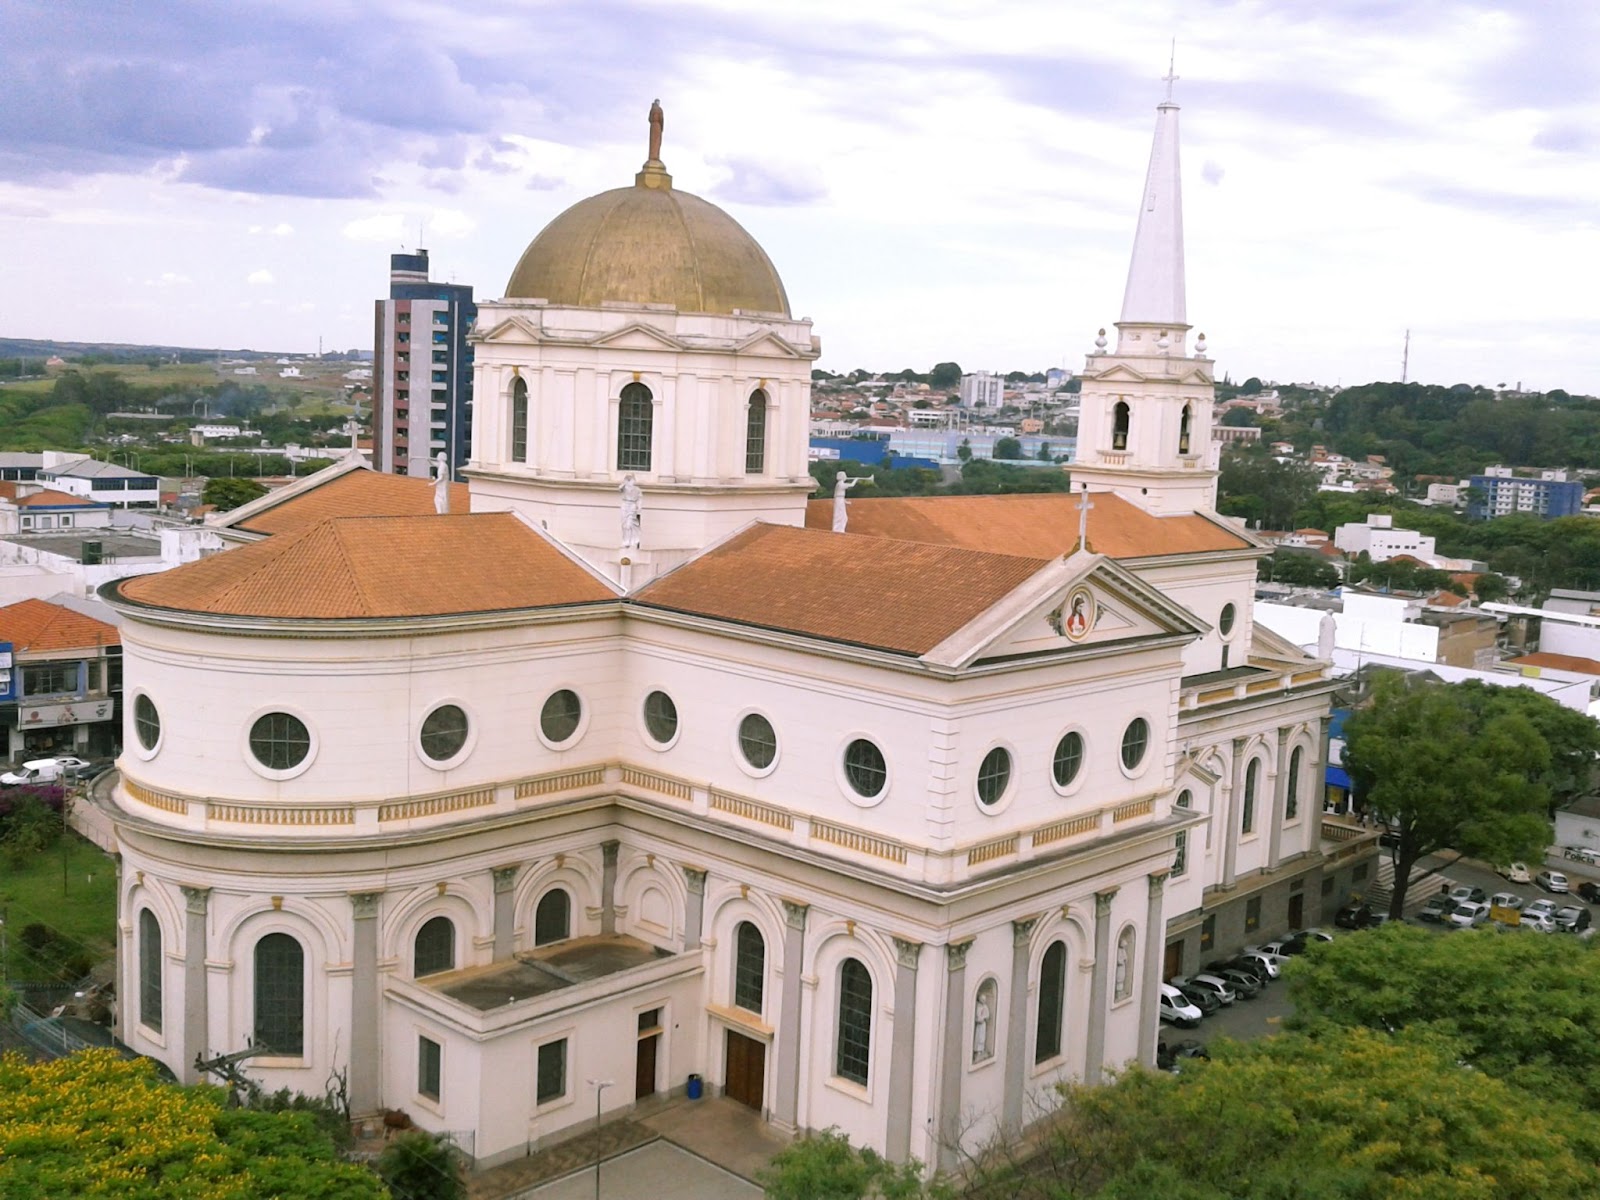 Imagem aérea da parte traseira da Basílica Santuário Santo Antônio de Pádua. Igreja com árvores ao seu redor. Ao fundo, é possível ver um pedaço das casas da cidade.